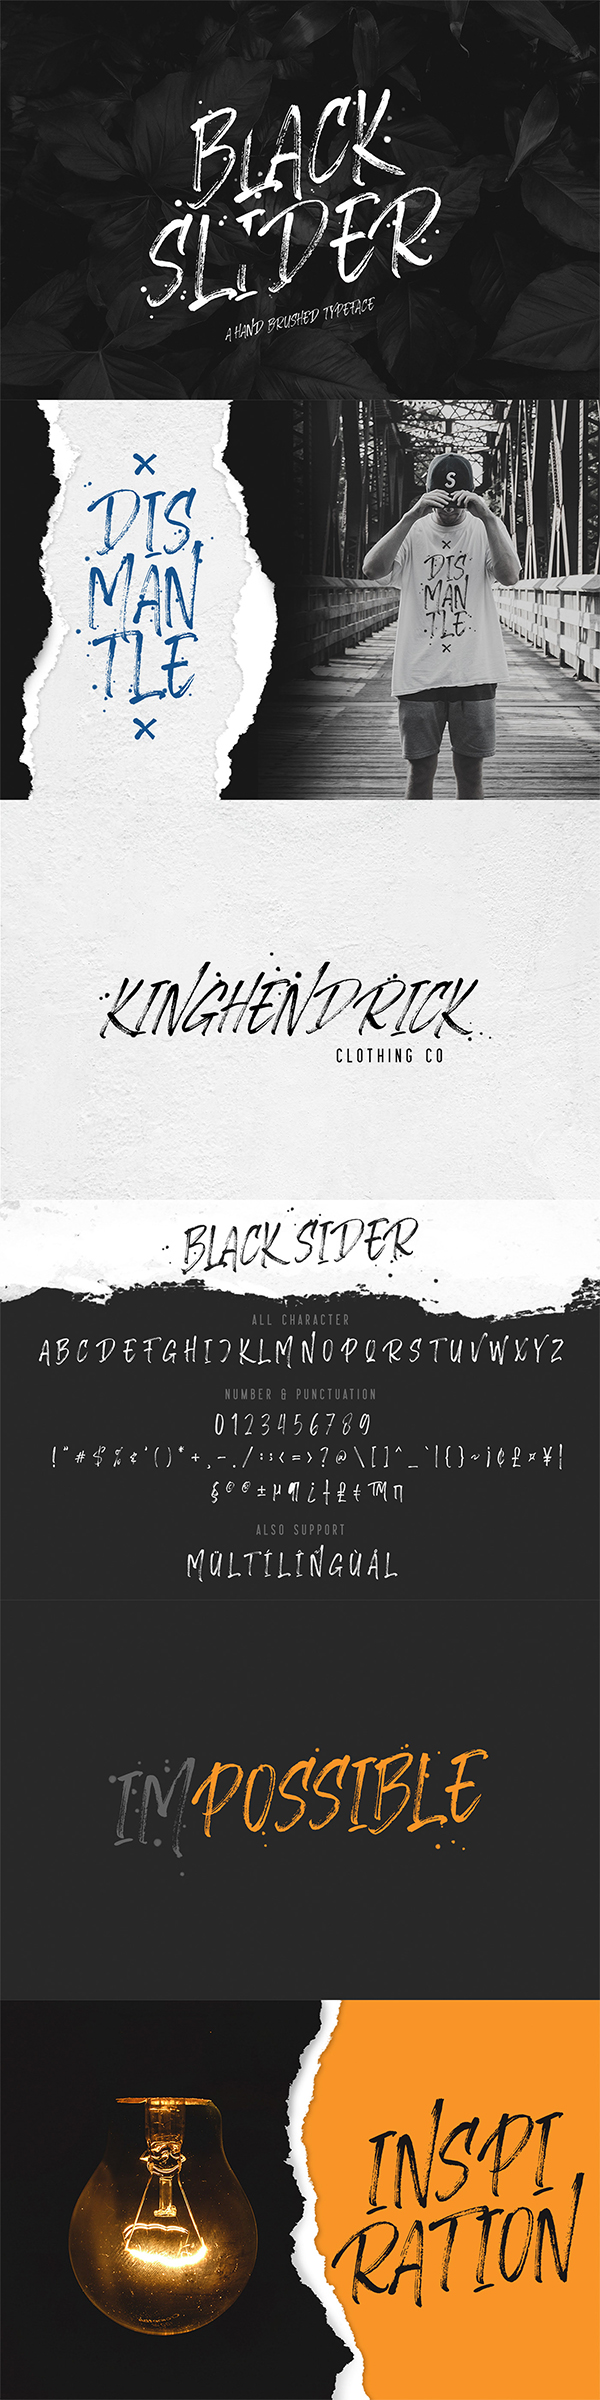 Black Slider - Hand Brushed Typeface